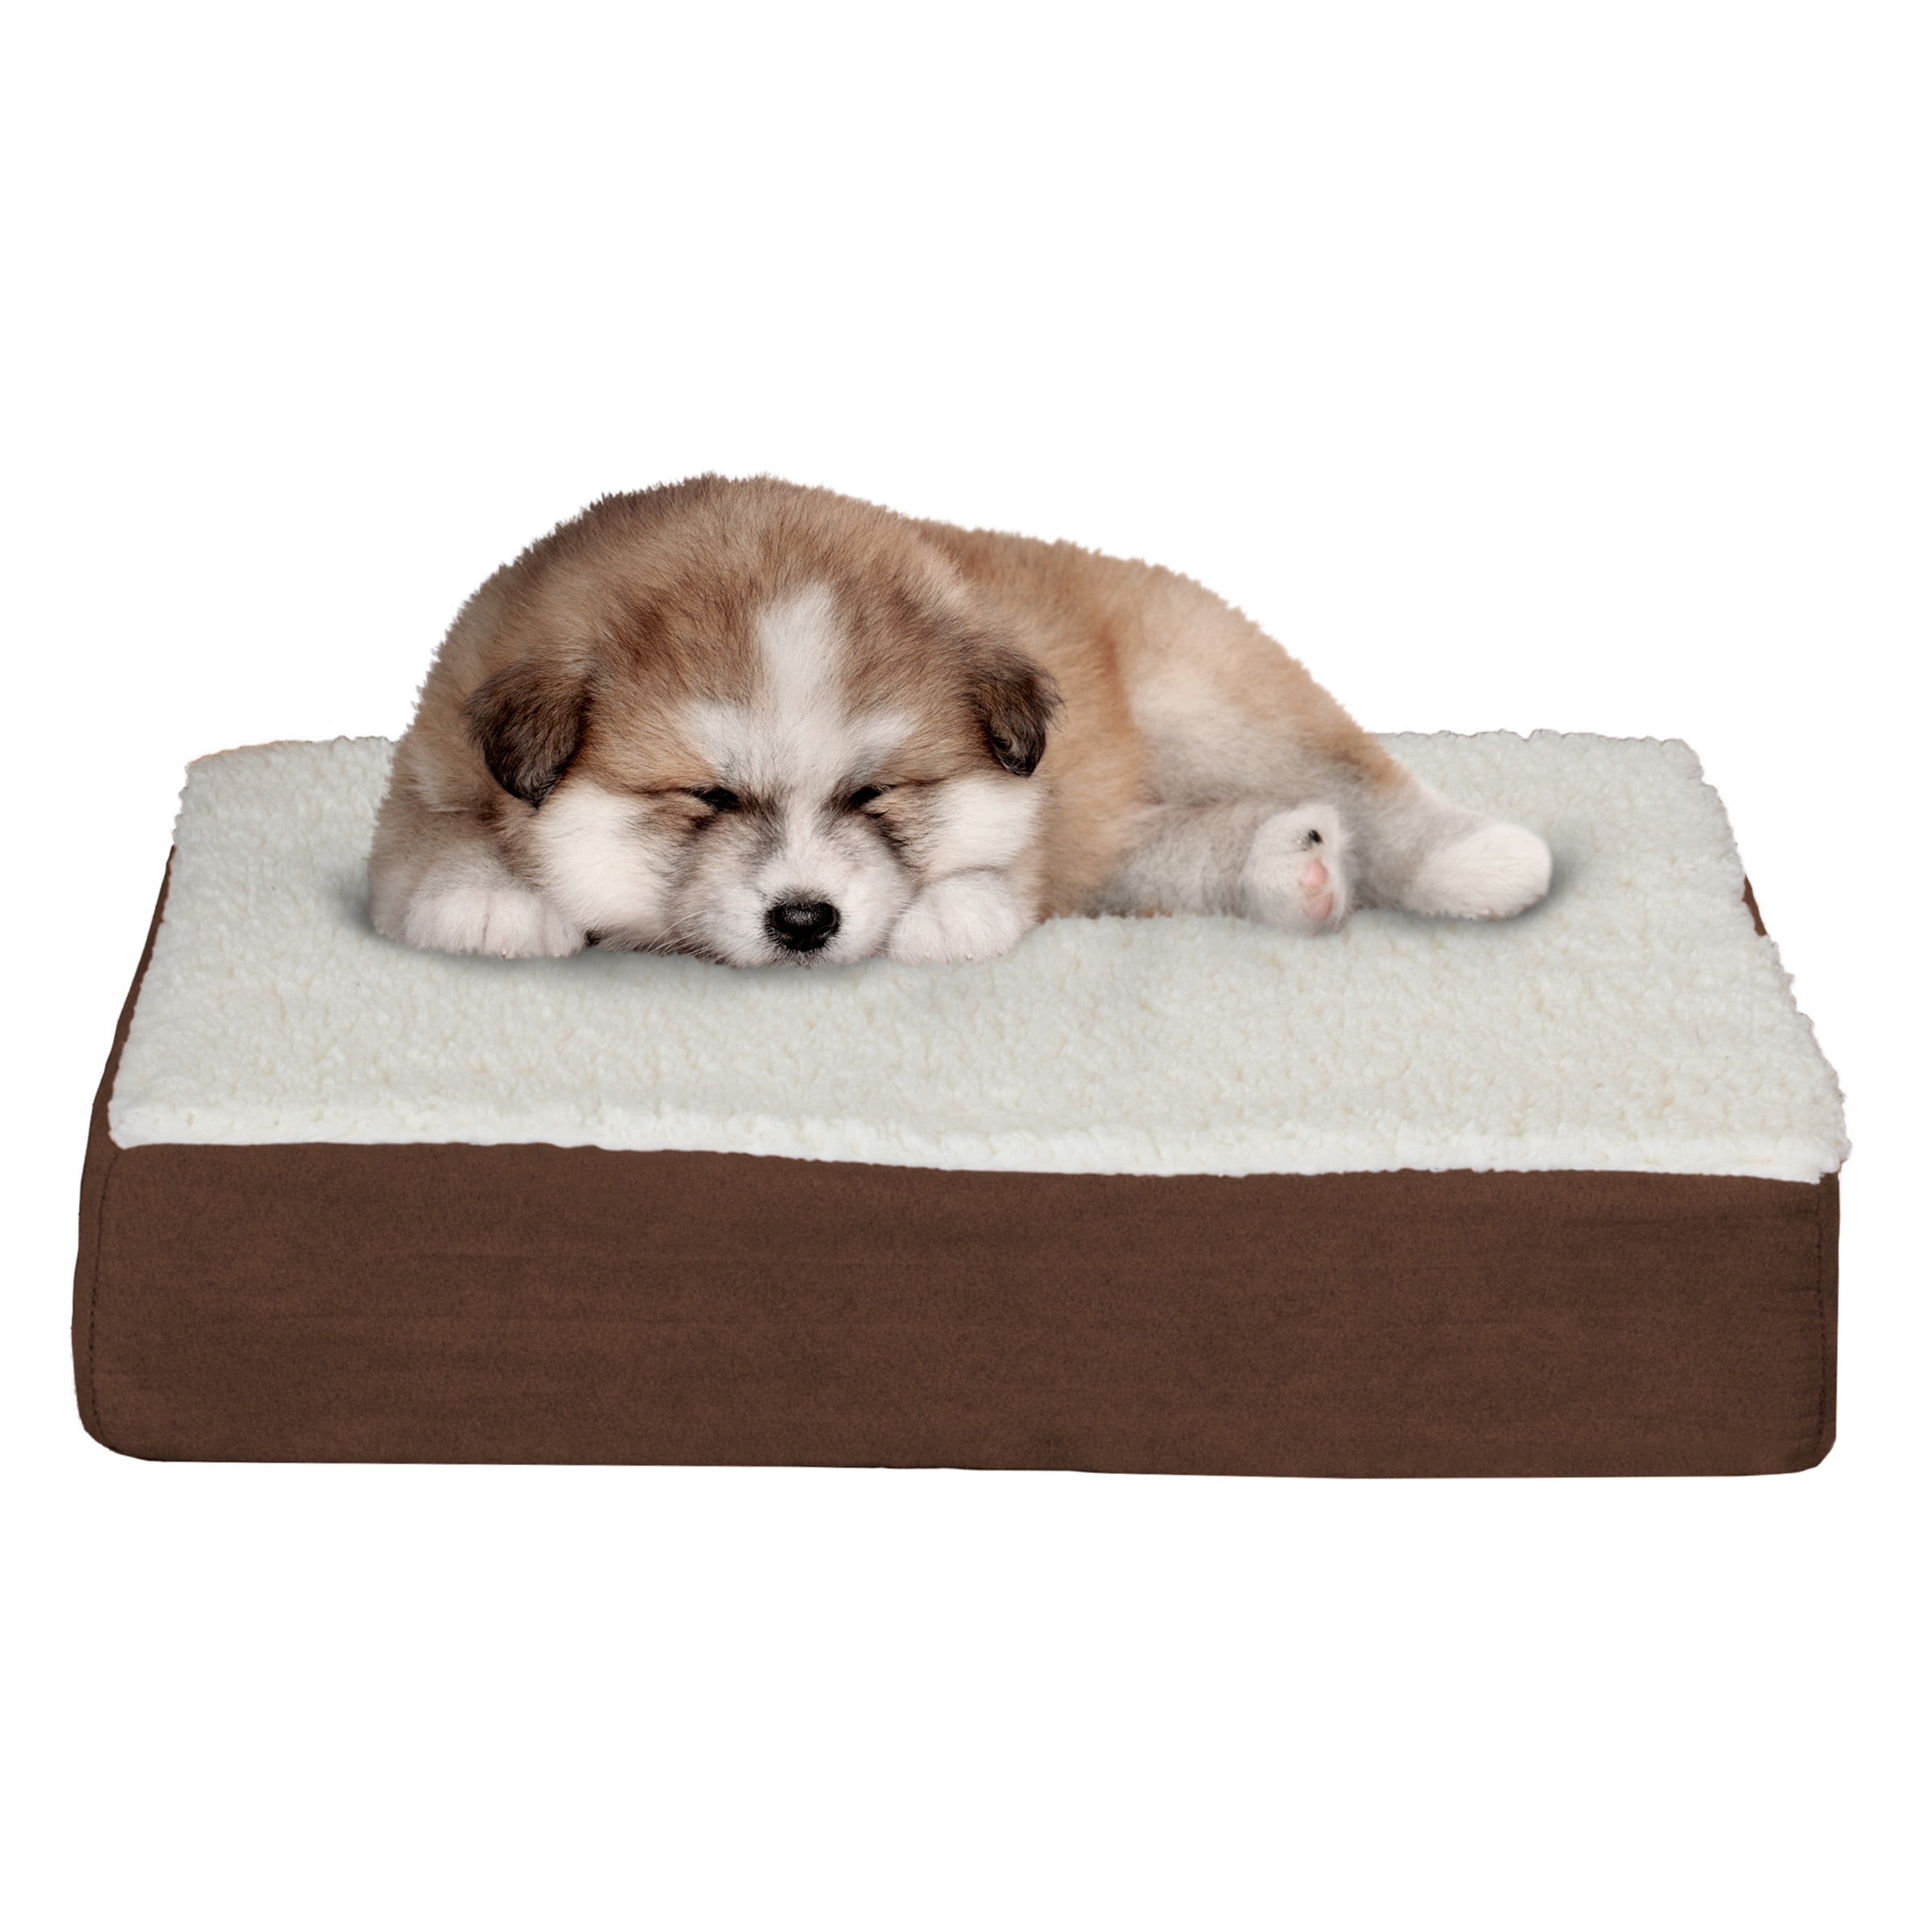 Petmaker Orthopedic Sherpa Top Pet Bed, Brown